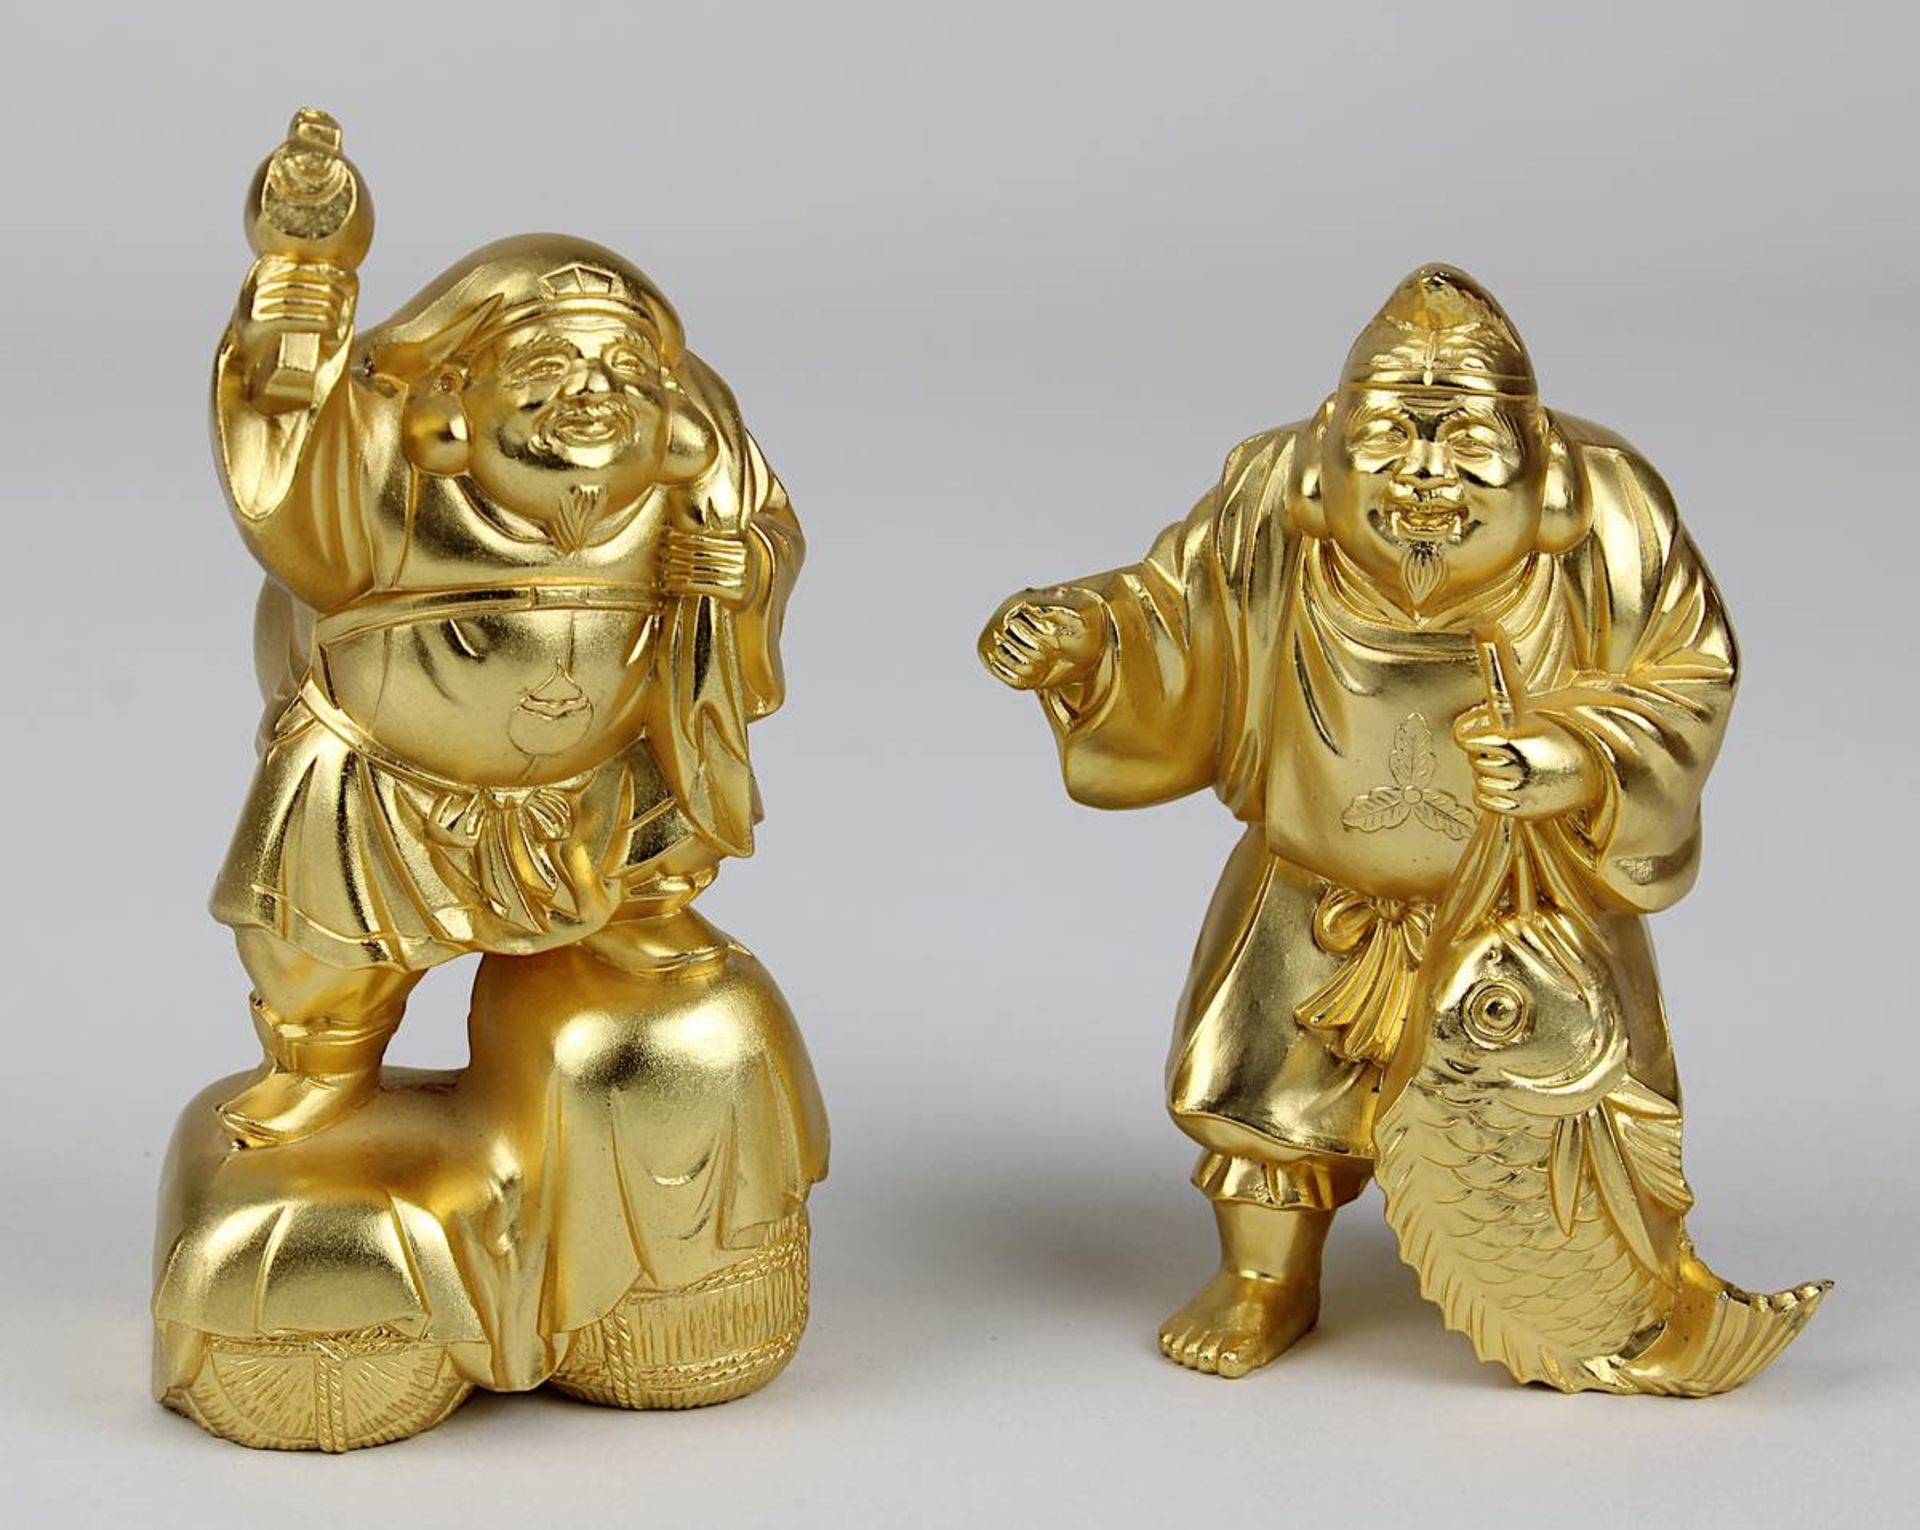 Zwei der sieben Glücksgötter, vergoldete Kupferlegierung, Takaoka, Japan neuzeitlich, H 10 bzw. 8